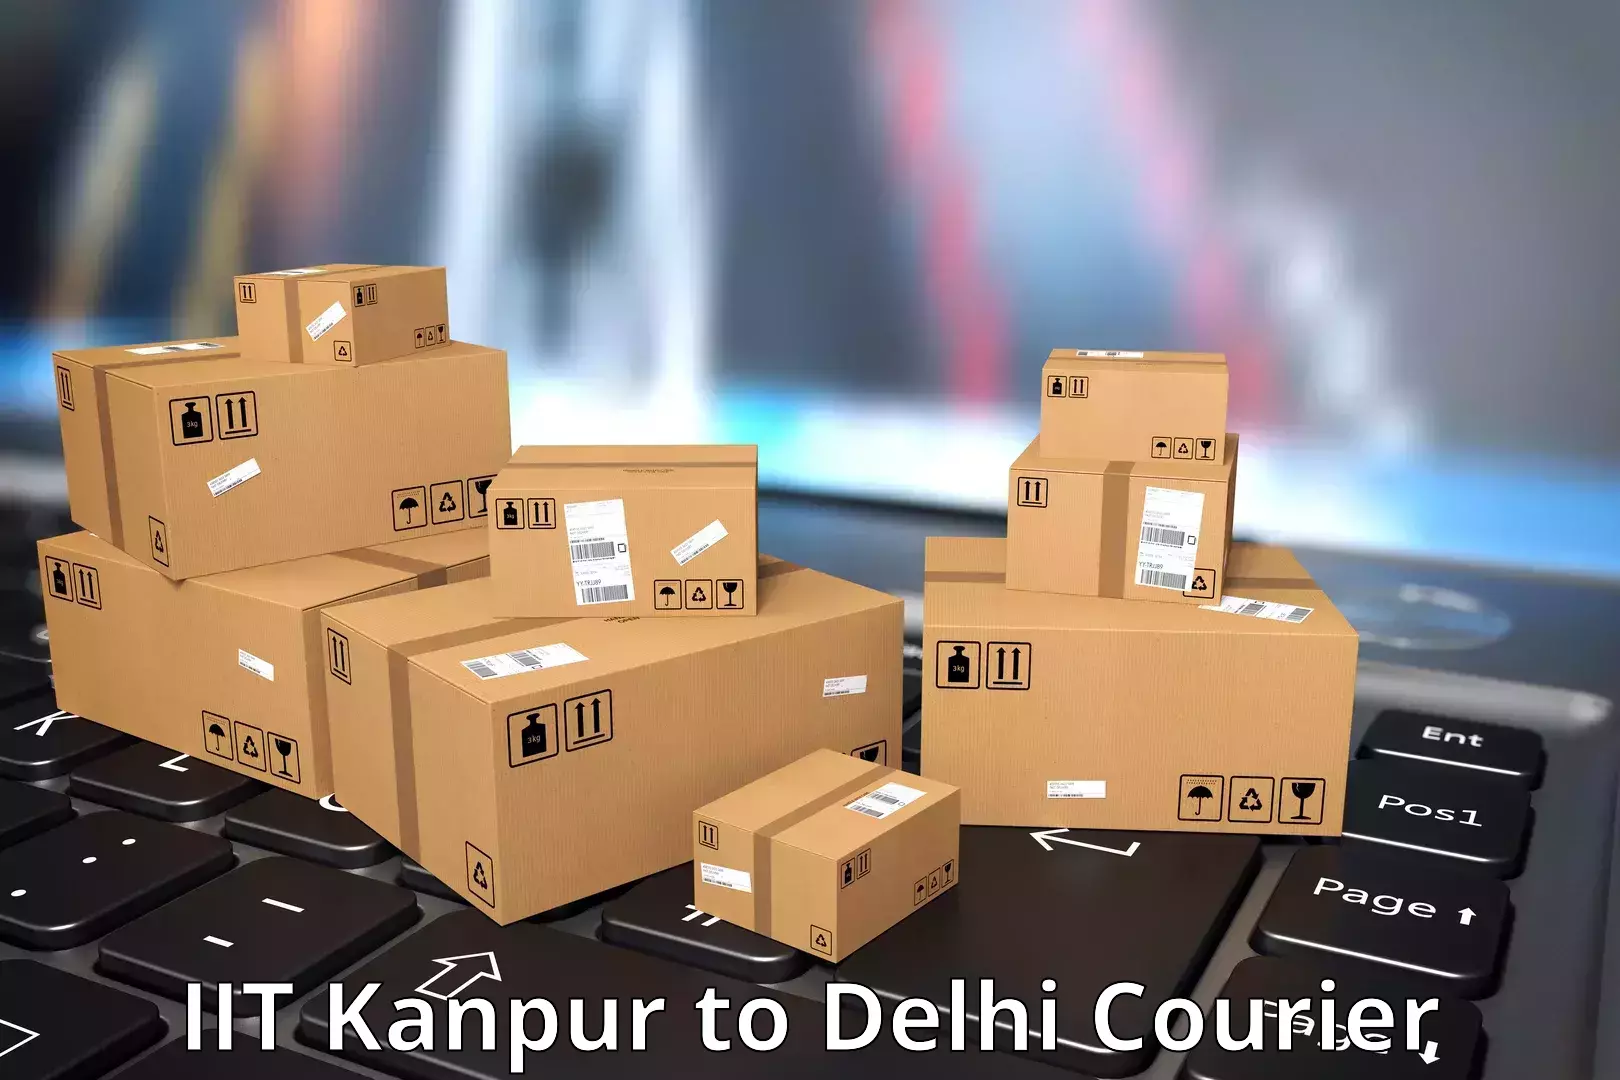 Efficient parcel service IIT Kanpur to Krishna Nagar